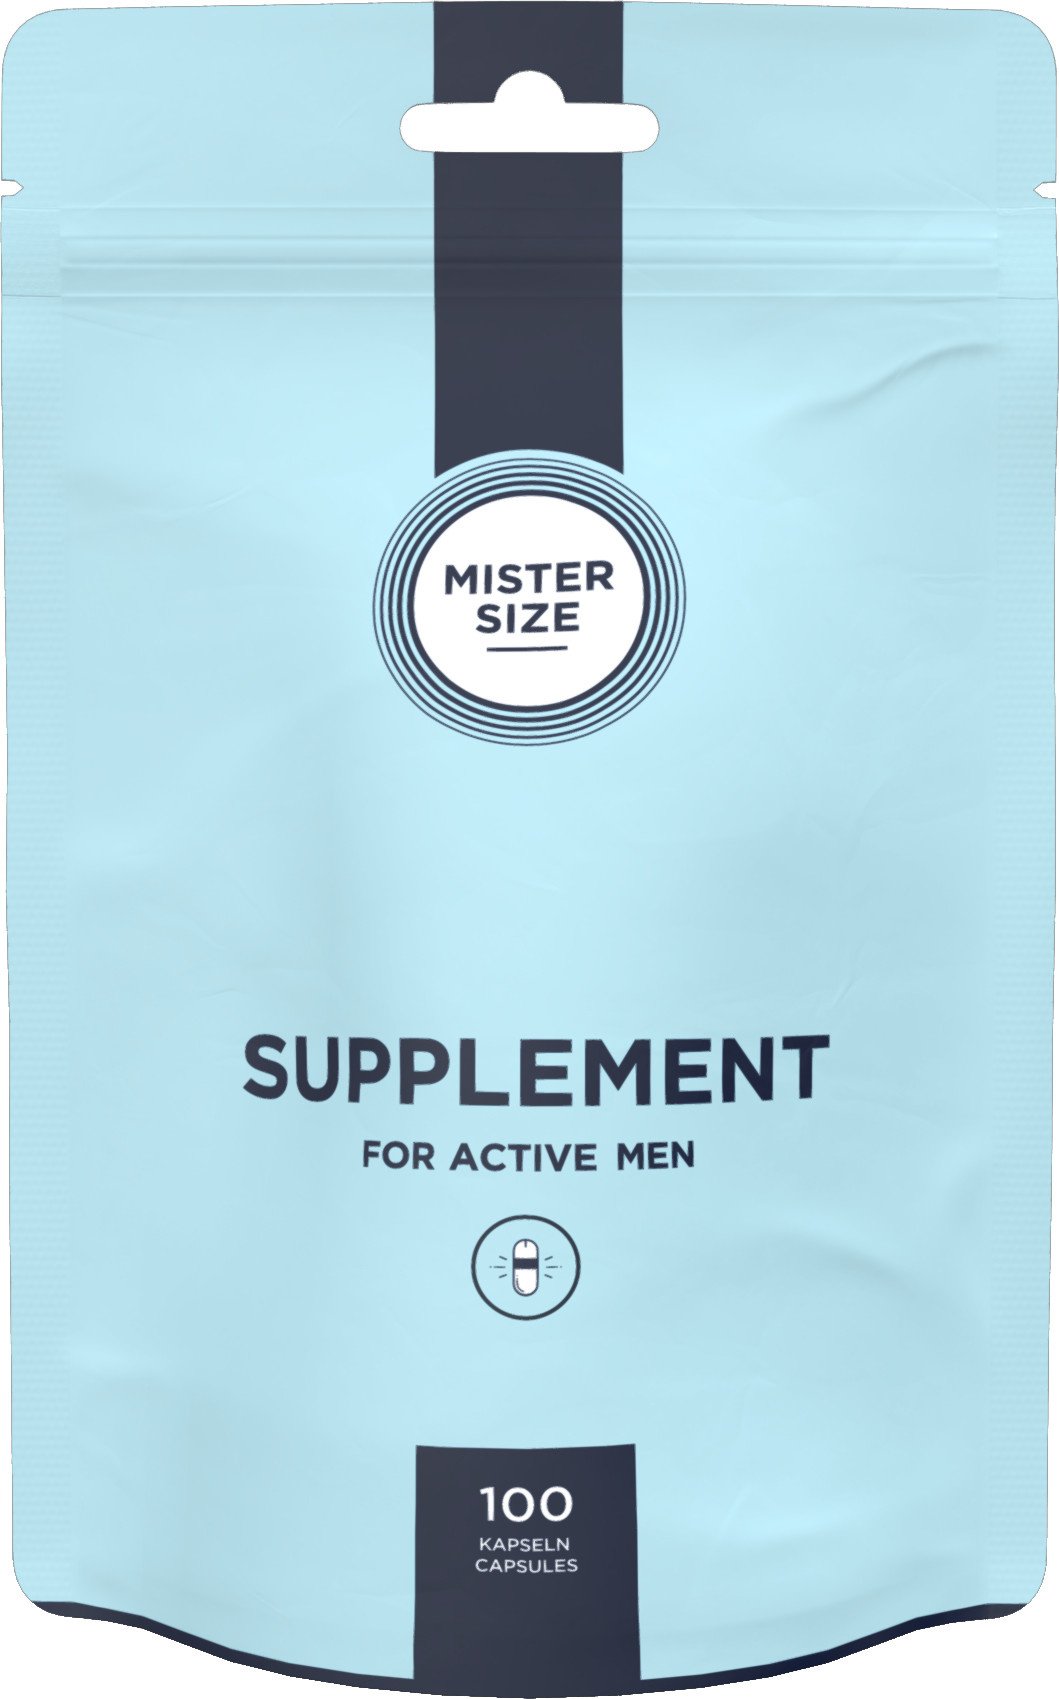 MISTER SIZE Supplement - 100 Capsules Voor De Actieve Man